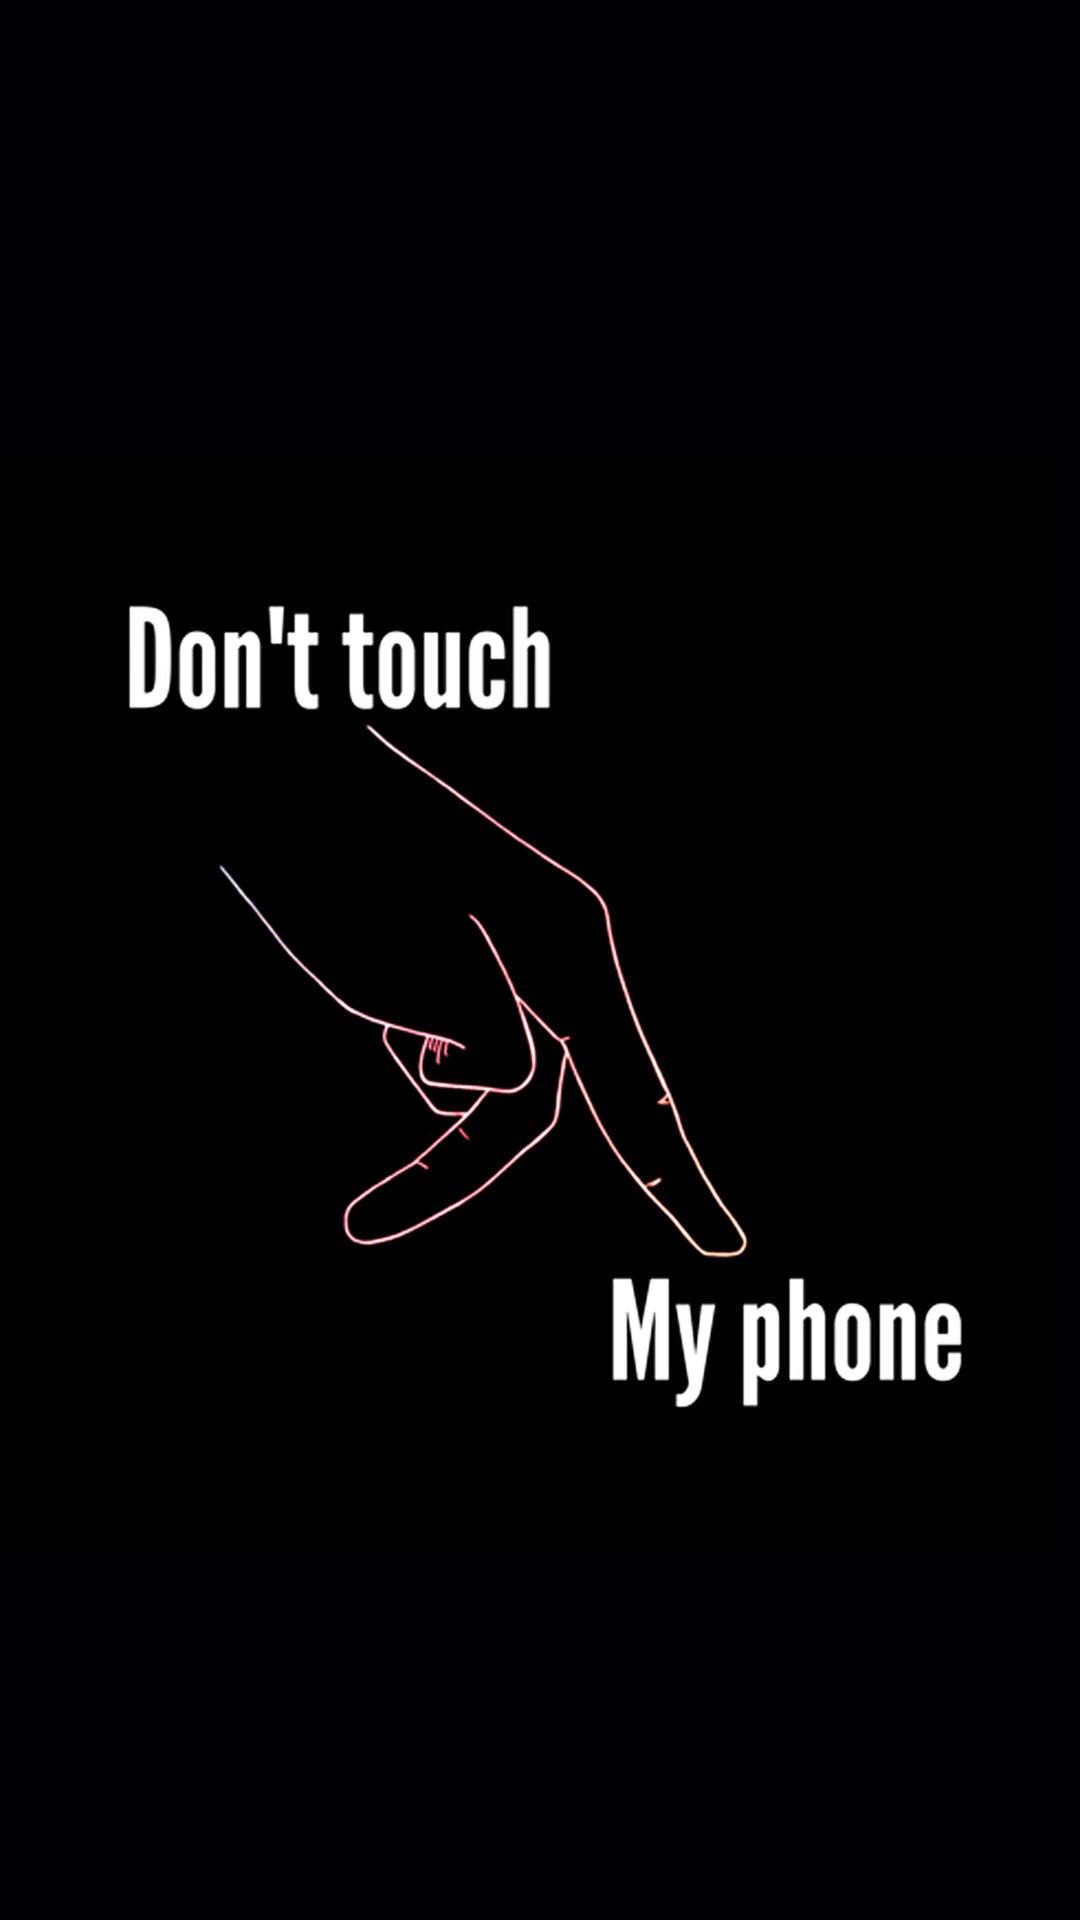 no toques el fondo de pantalla de mi teléfono hd,negro,fuente,texto,gráficos,fotografía